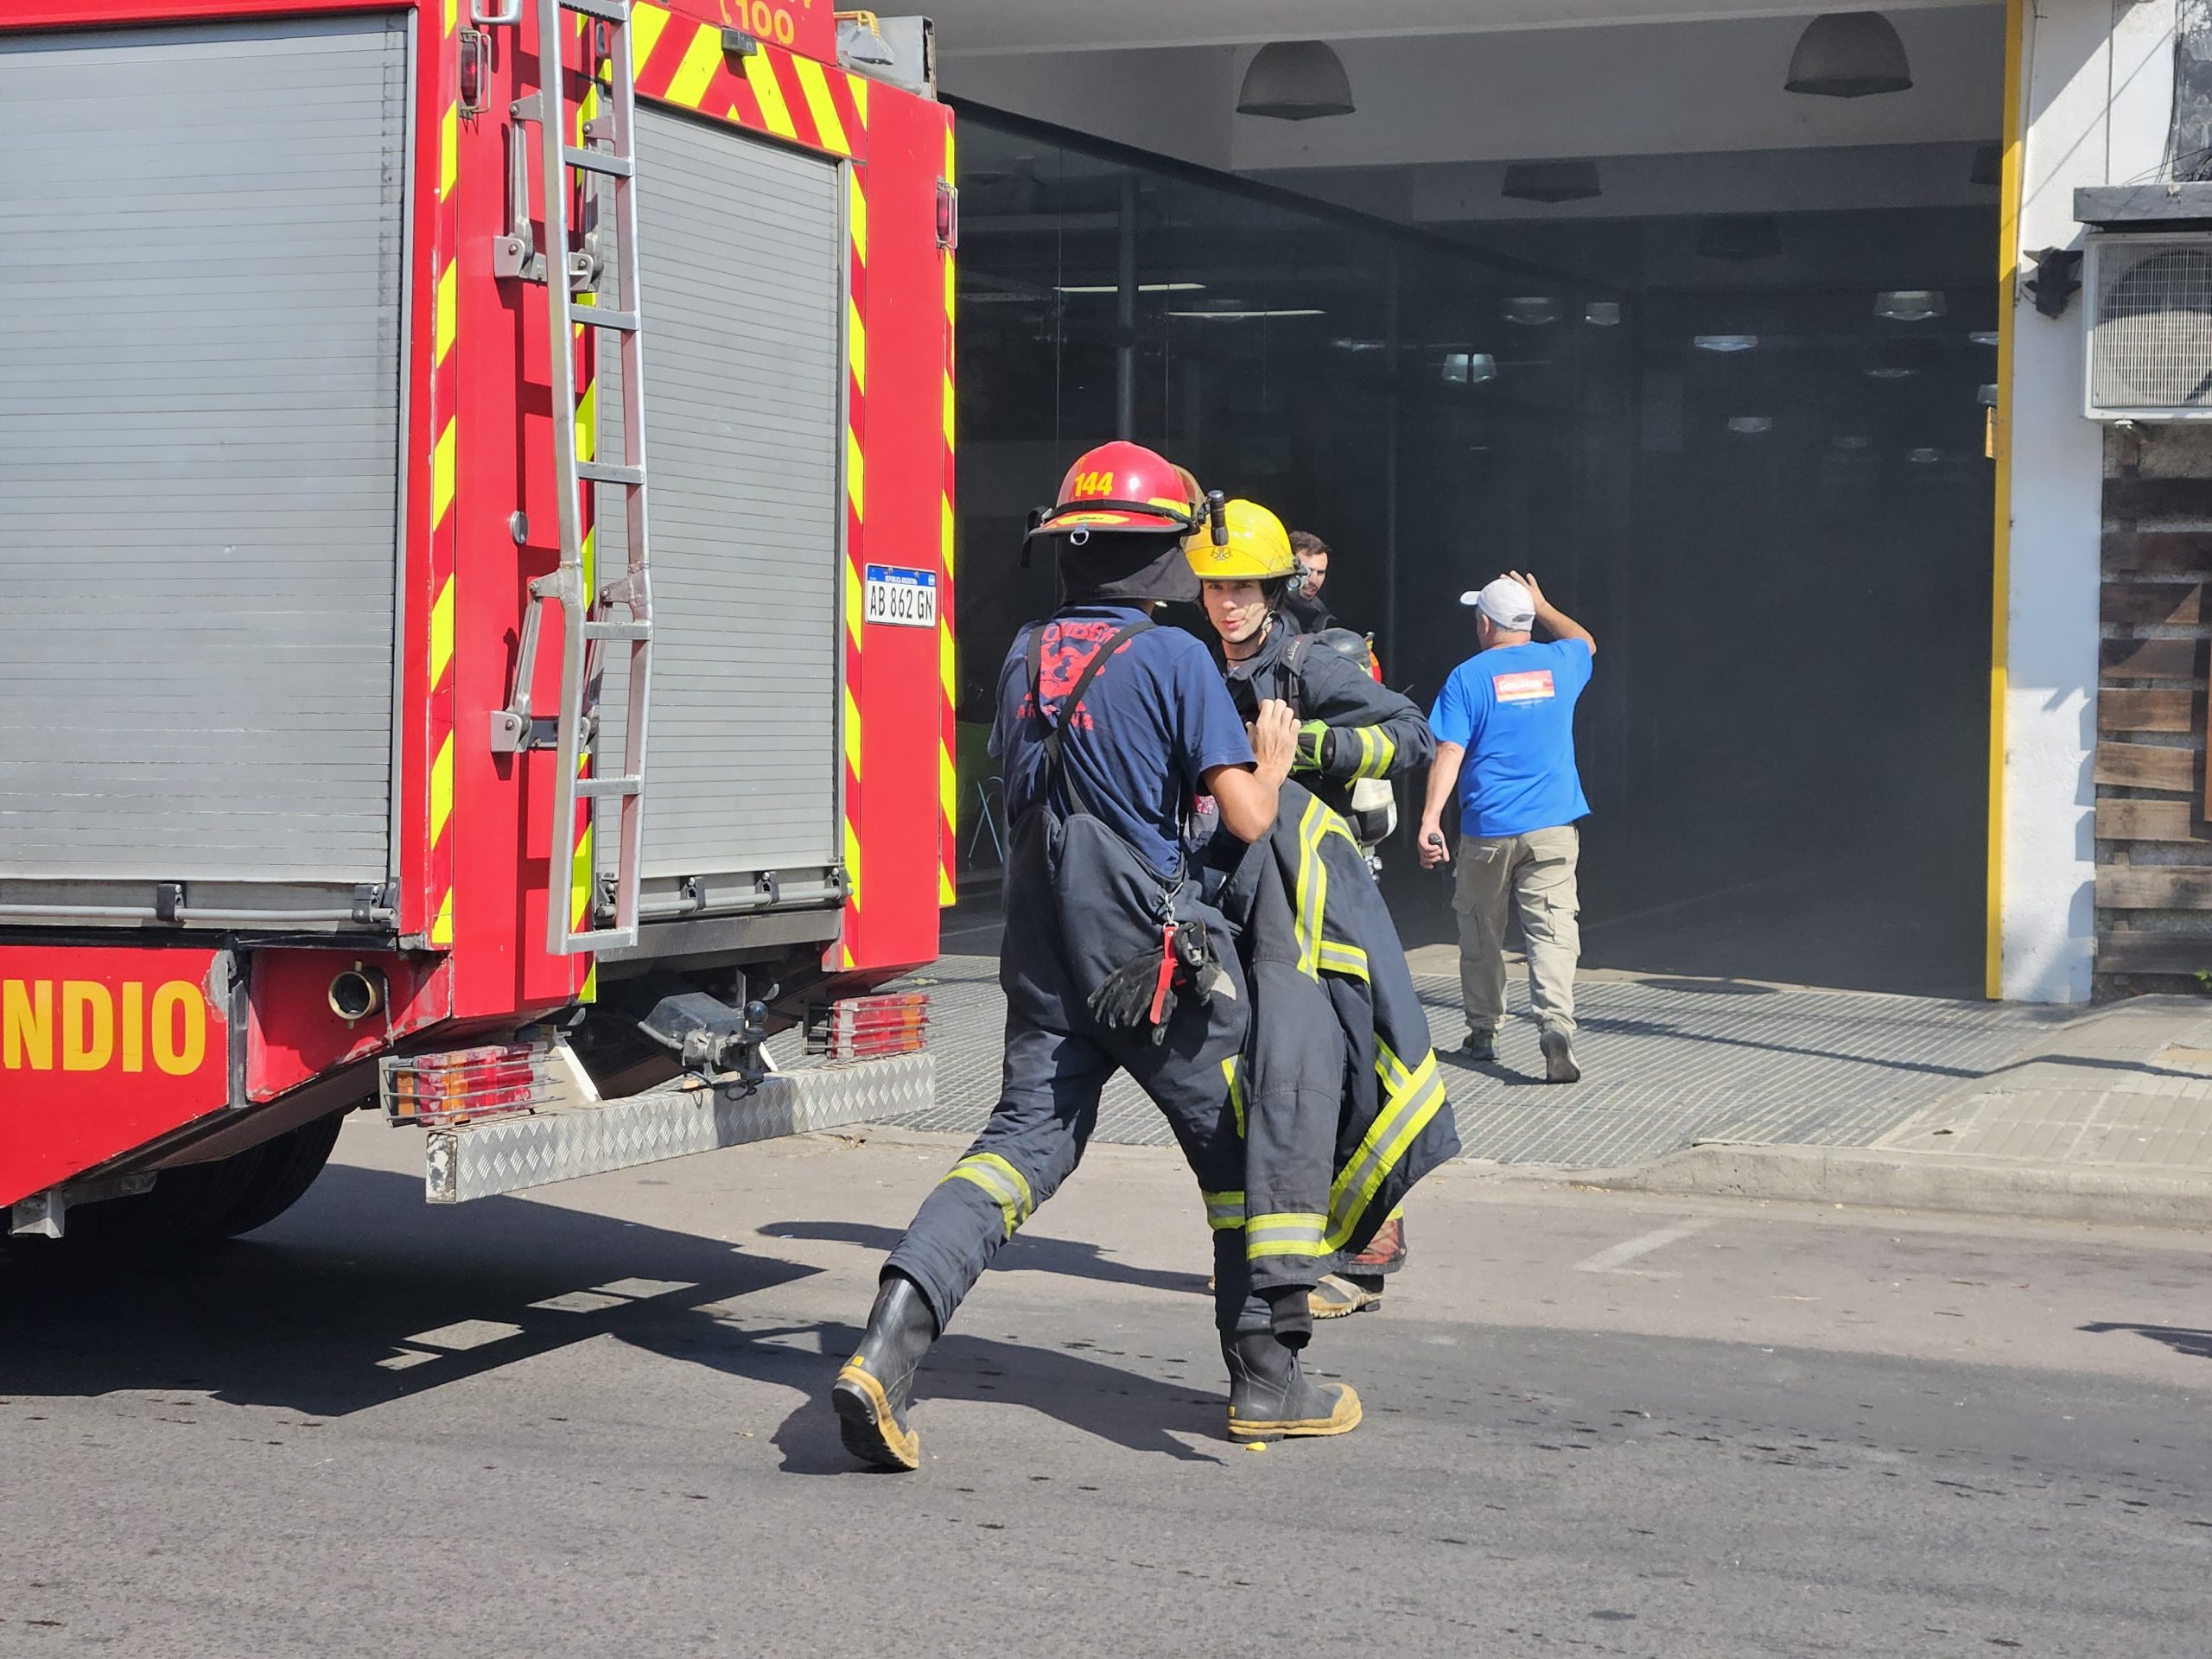 “Los operarios actuaron rápidamente con extintores”, remarcó el jefe de Bomberos tras el incendio en el taller